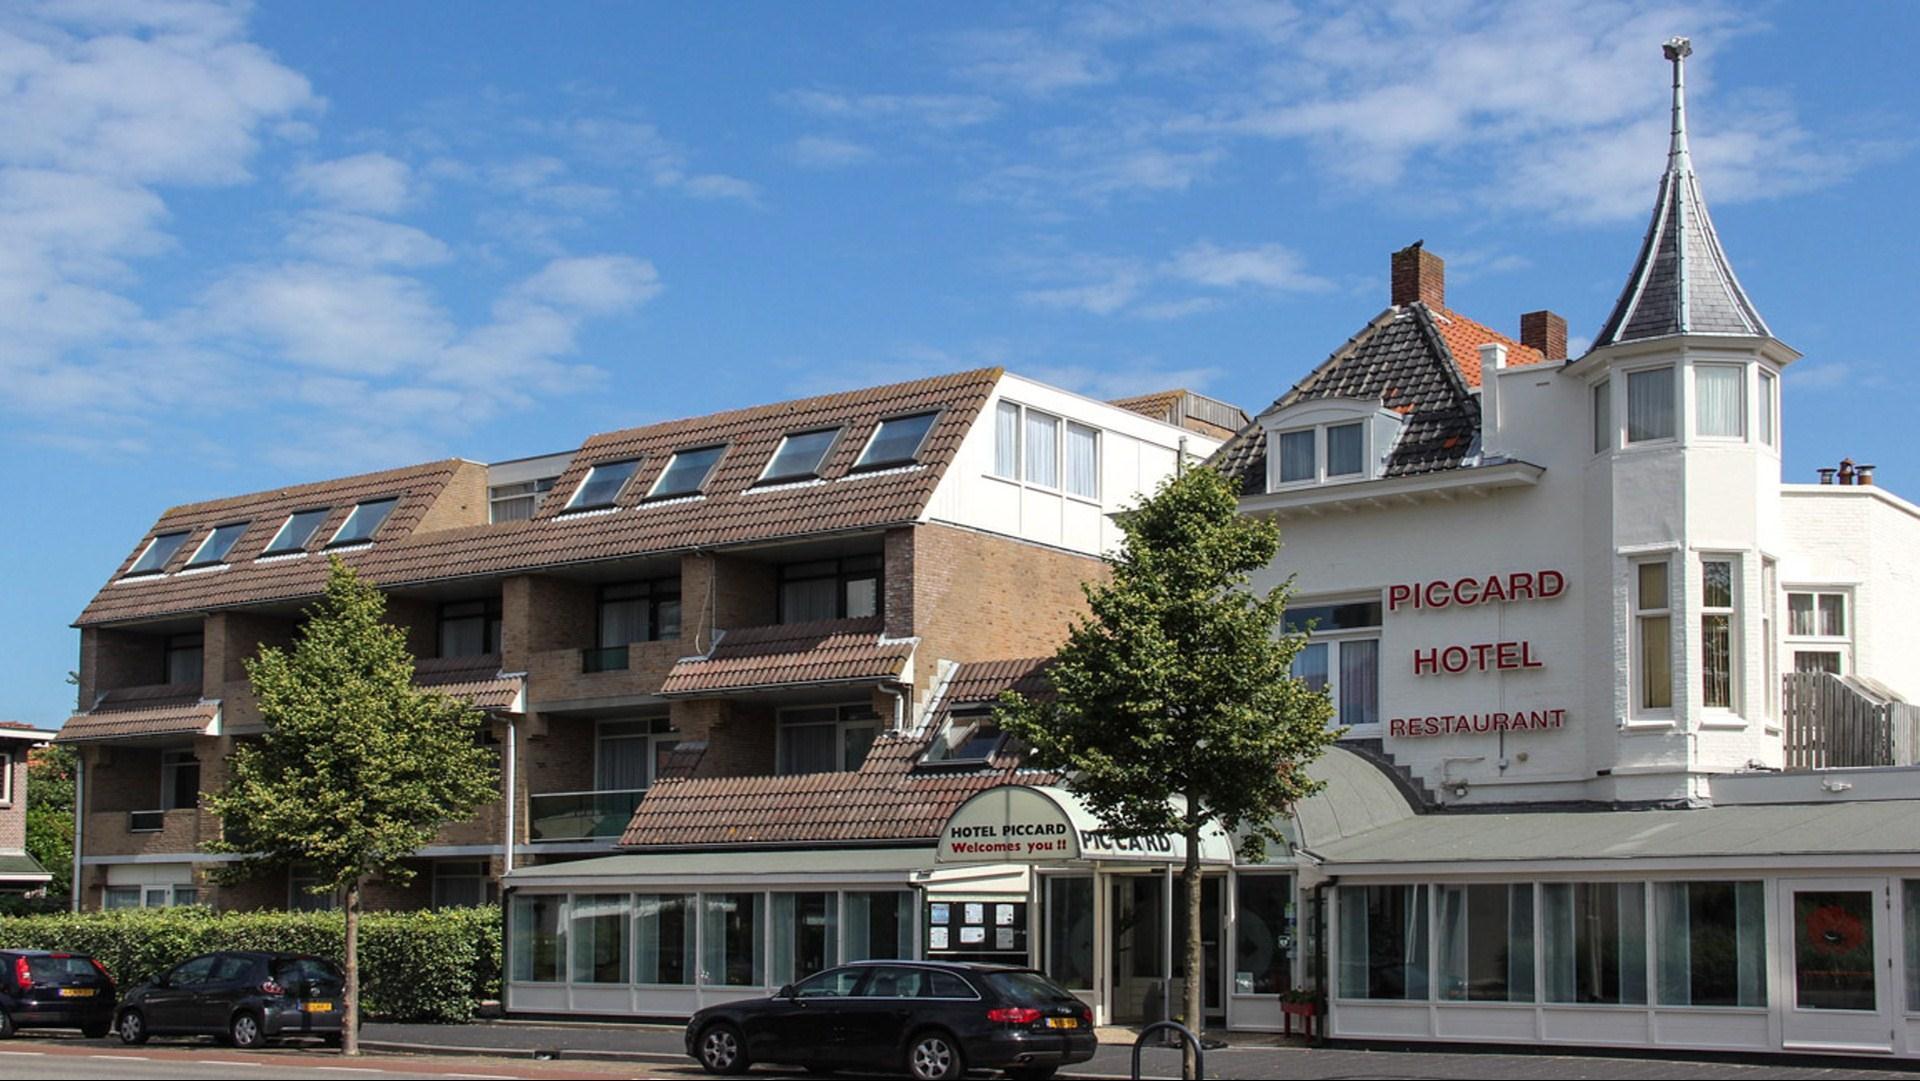 Hotel Restaurant Piccard in Vlissingen, NL